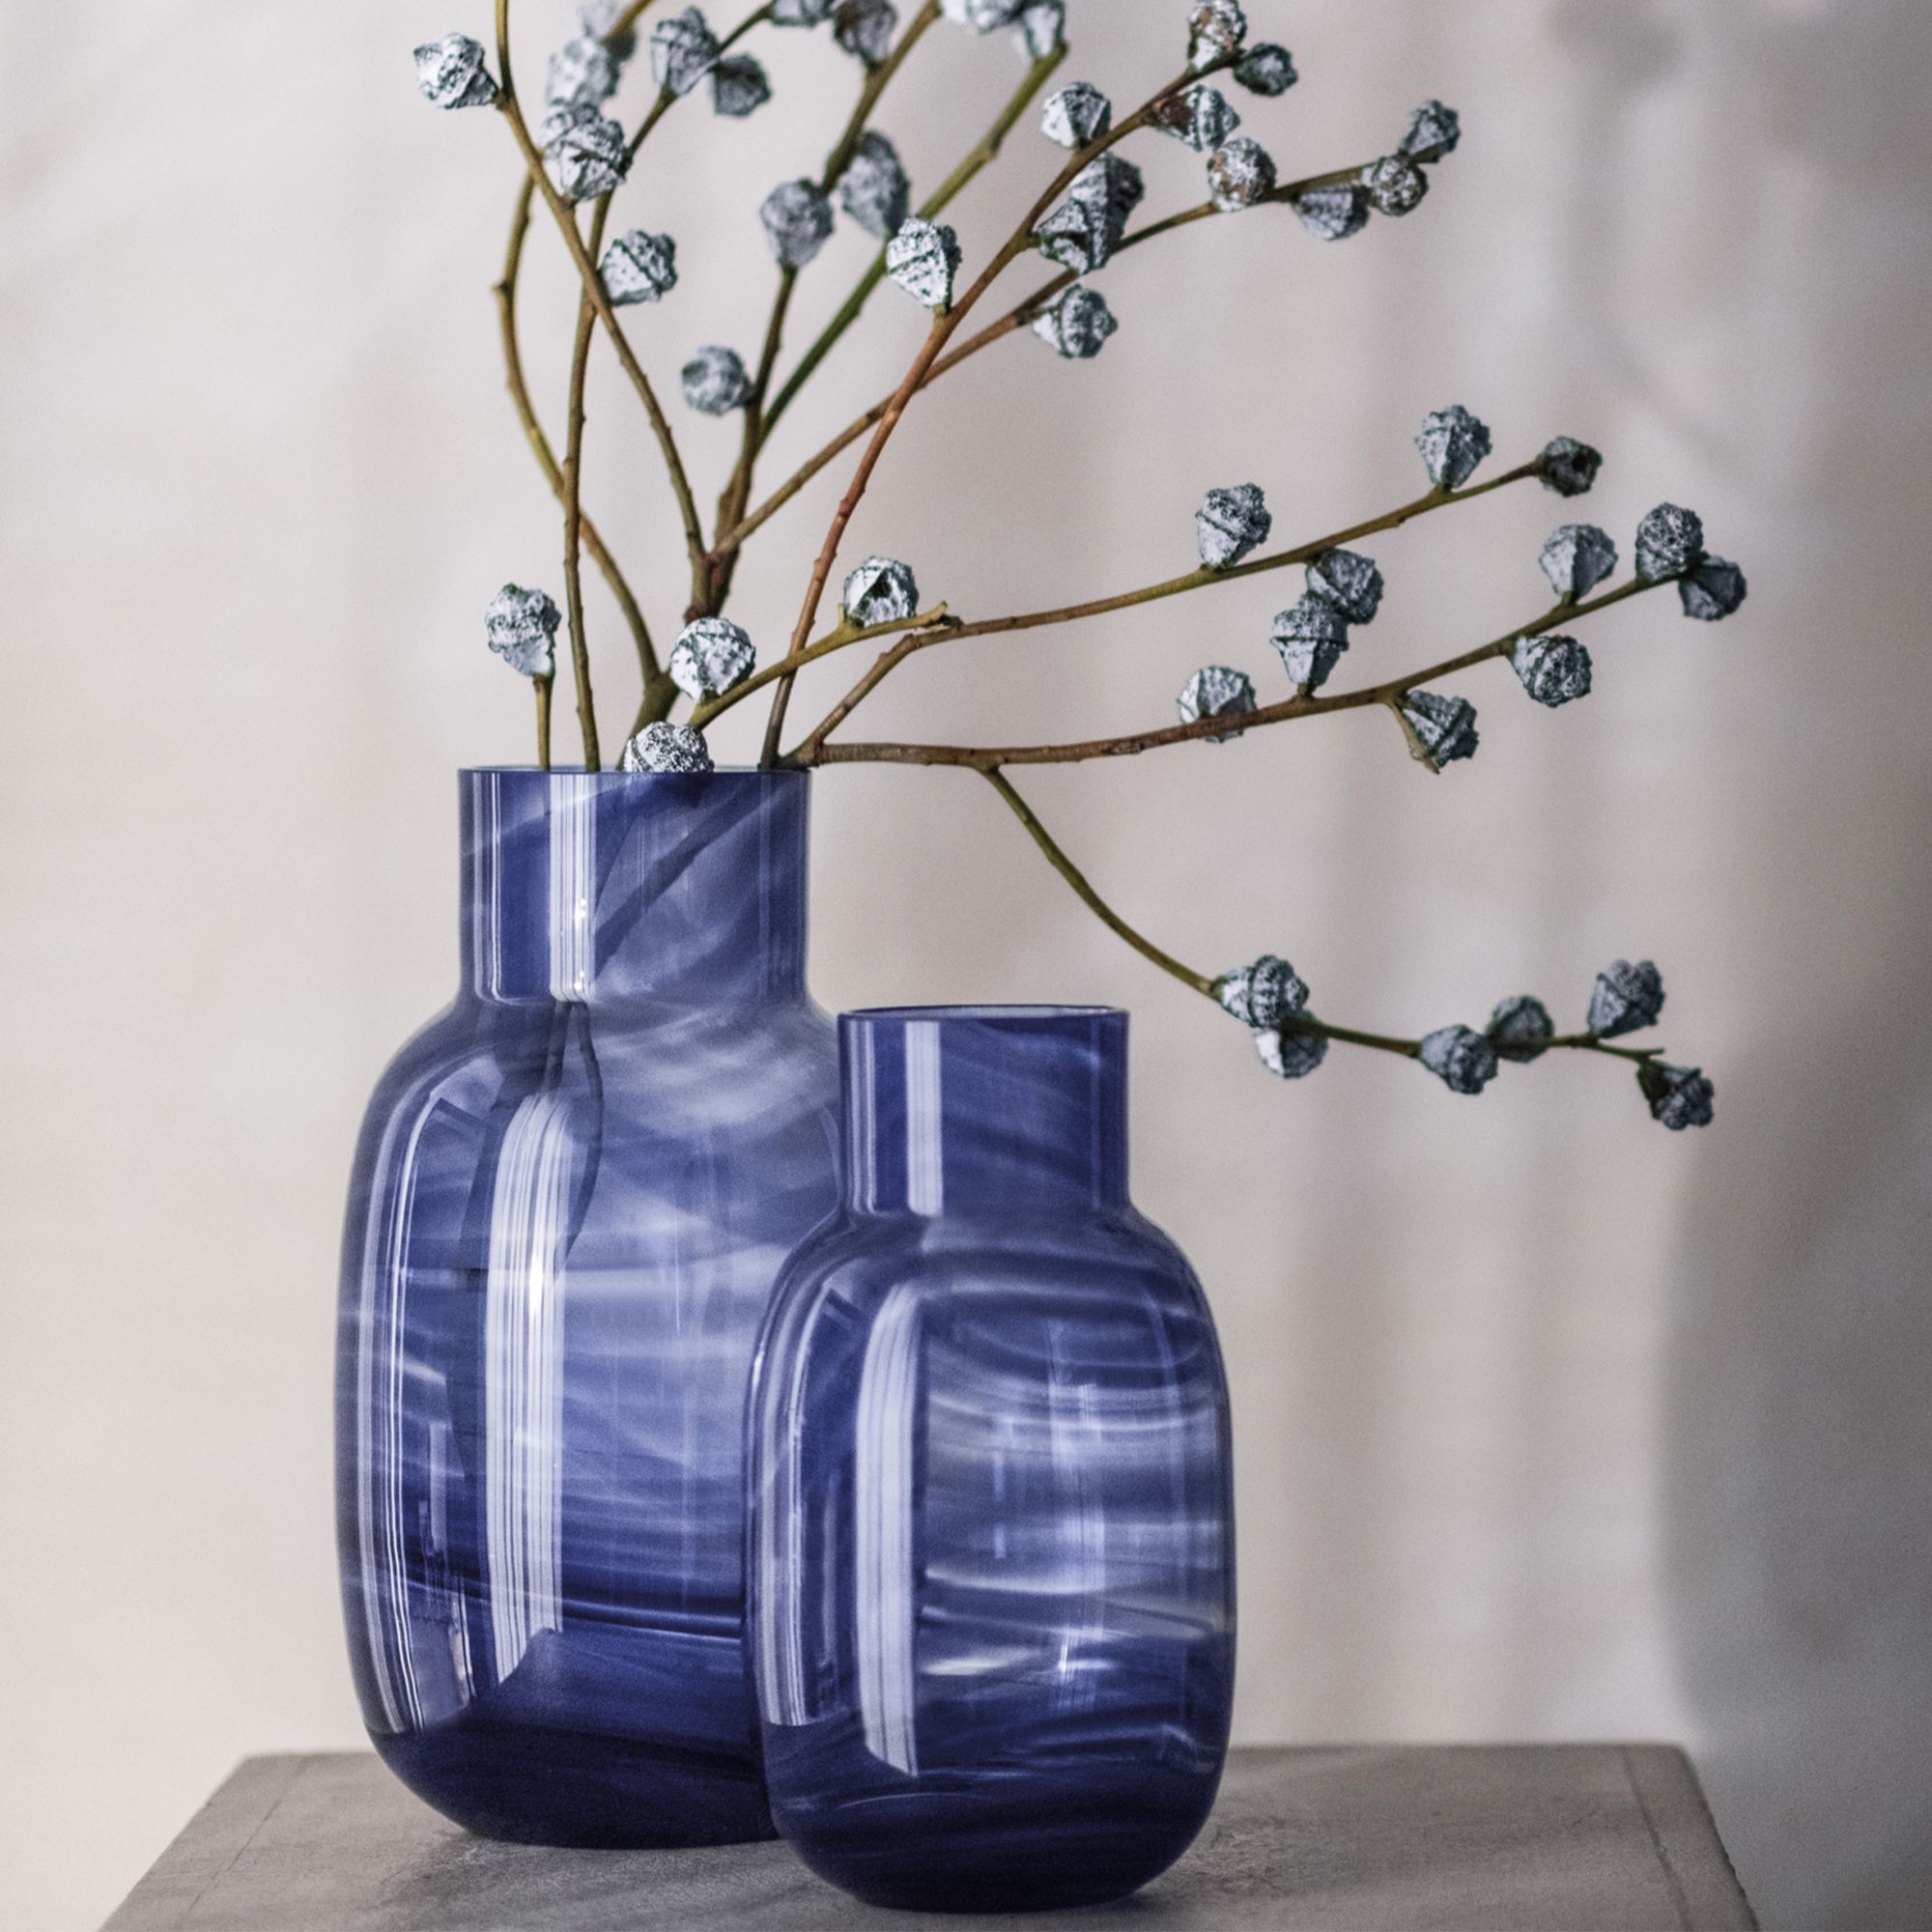 Zwiesel Glas - Vase Waters groß, blau